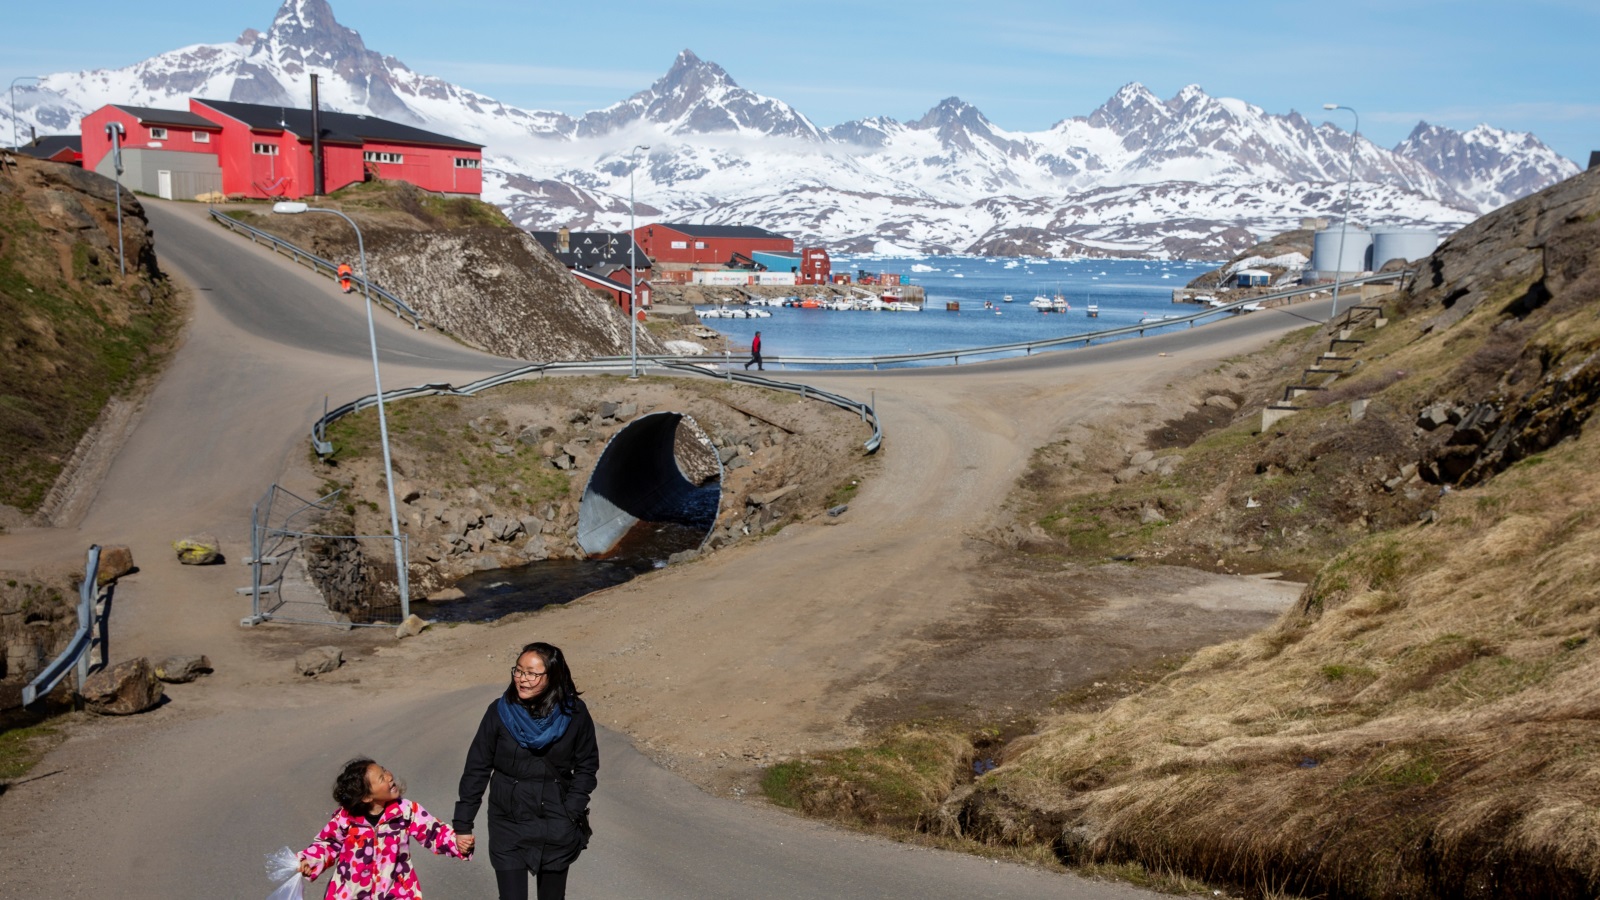 رغم نهاية الحرب الباردة مطلع التسعينيات، لم ينتهِ الاهتمام الأميركي بغرينلاند أبدا، وظلّت الجزيرة الشاسعة موضعا للاهتمام وساحة للتنافس